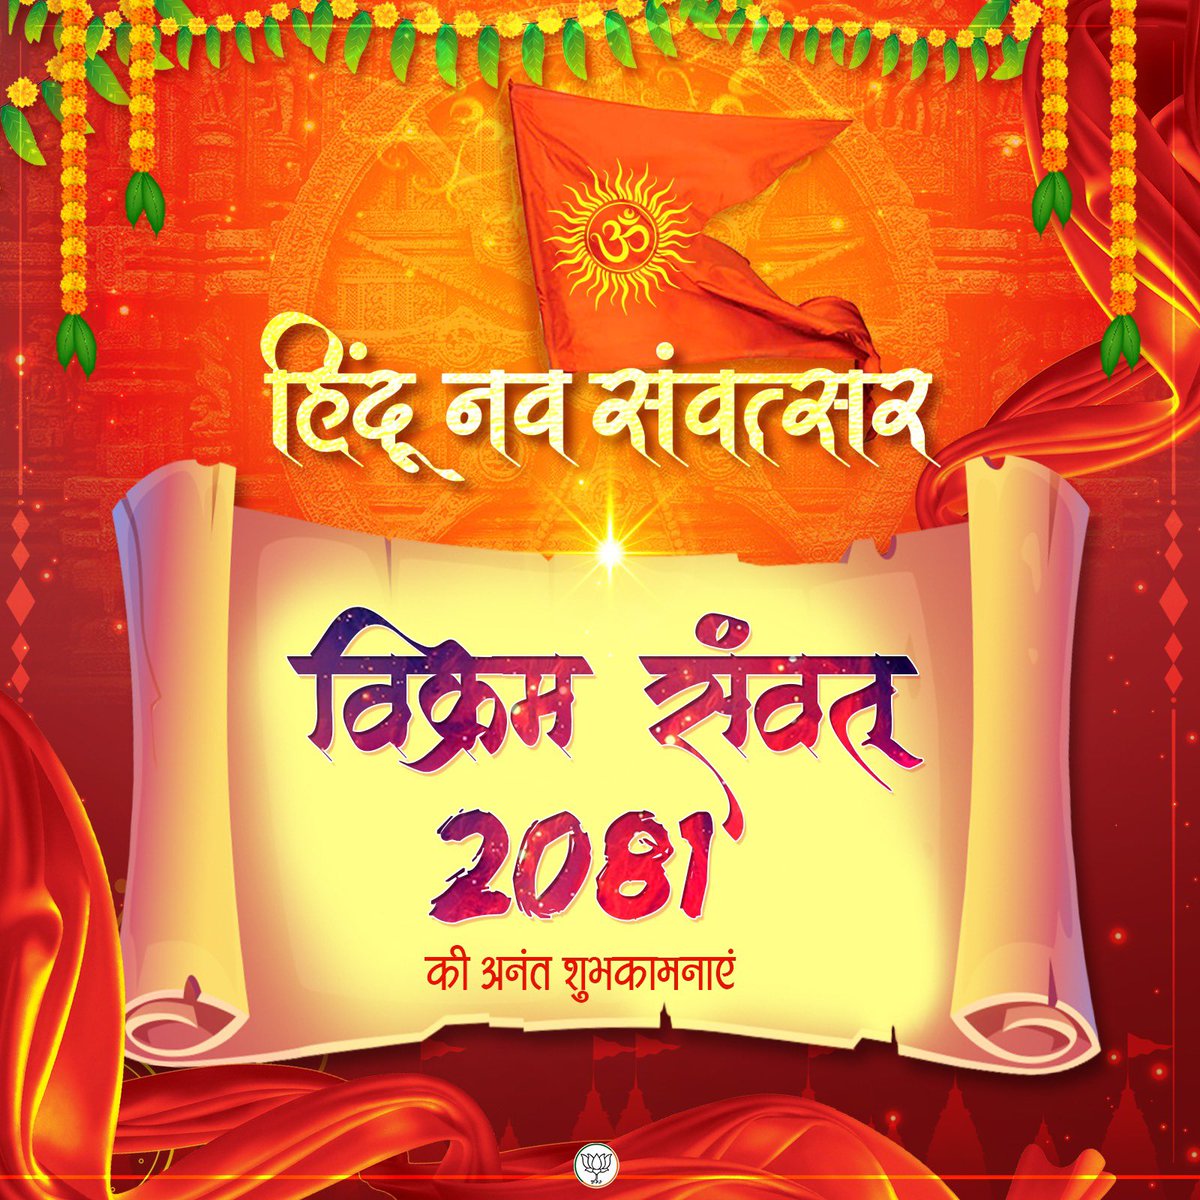 समस्त देशवासियों को  हिंदू नव संवत्सर विक्रम संवत् 2081 की अनंत शुभकामनाएं।

#HinduNavVarsh2081 
@BJP4India